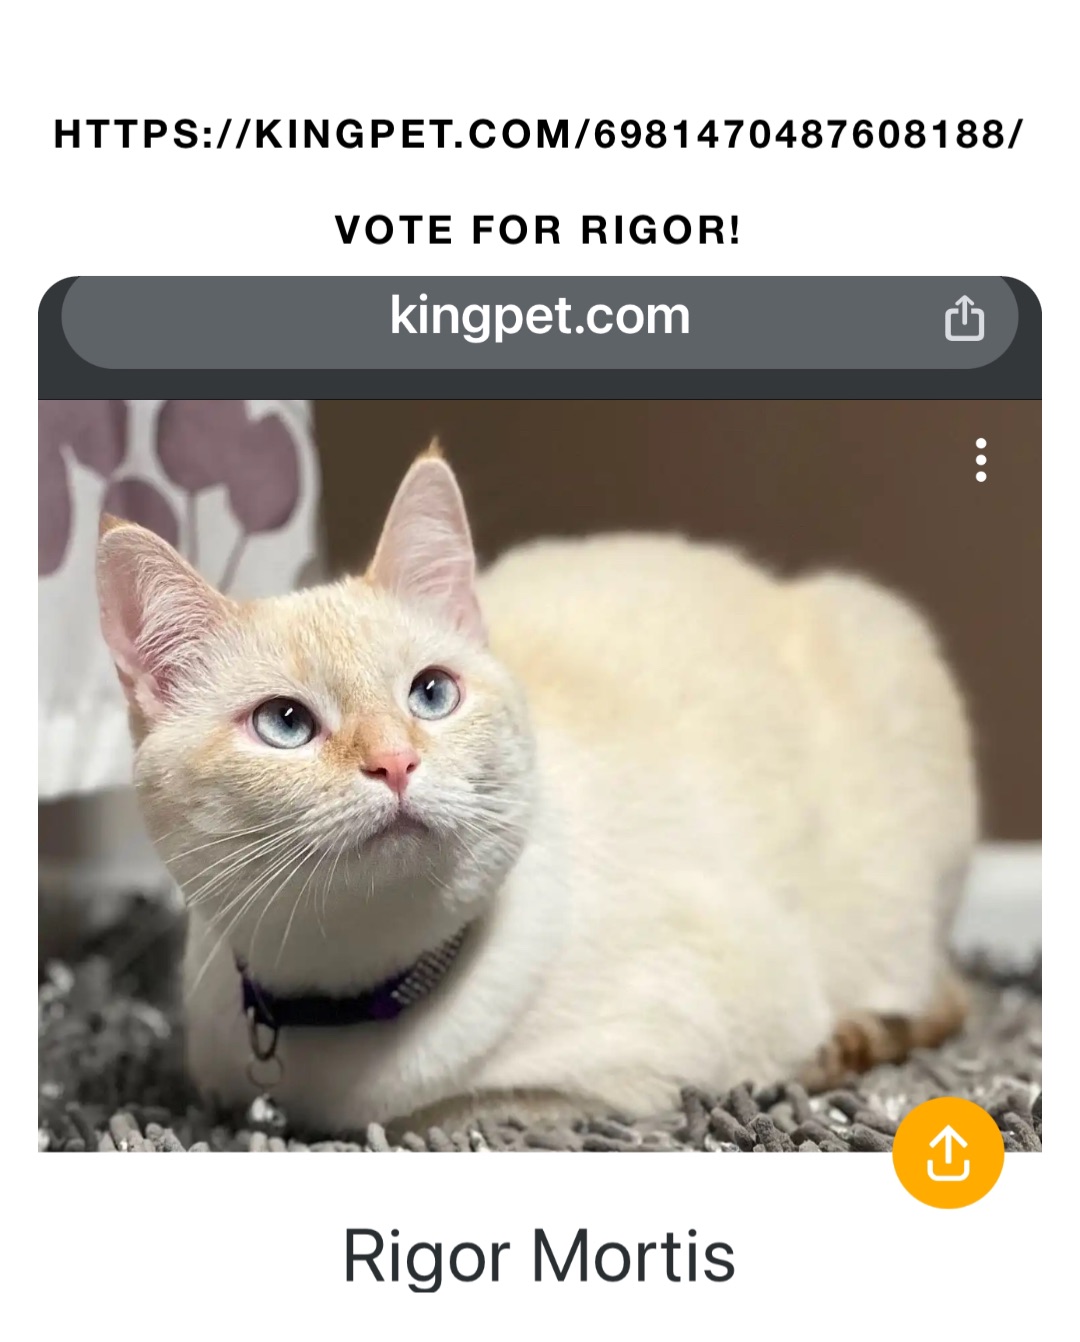 https://kingpet.com/6981470487608188/

Vote for Rigor!